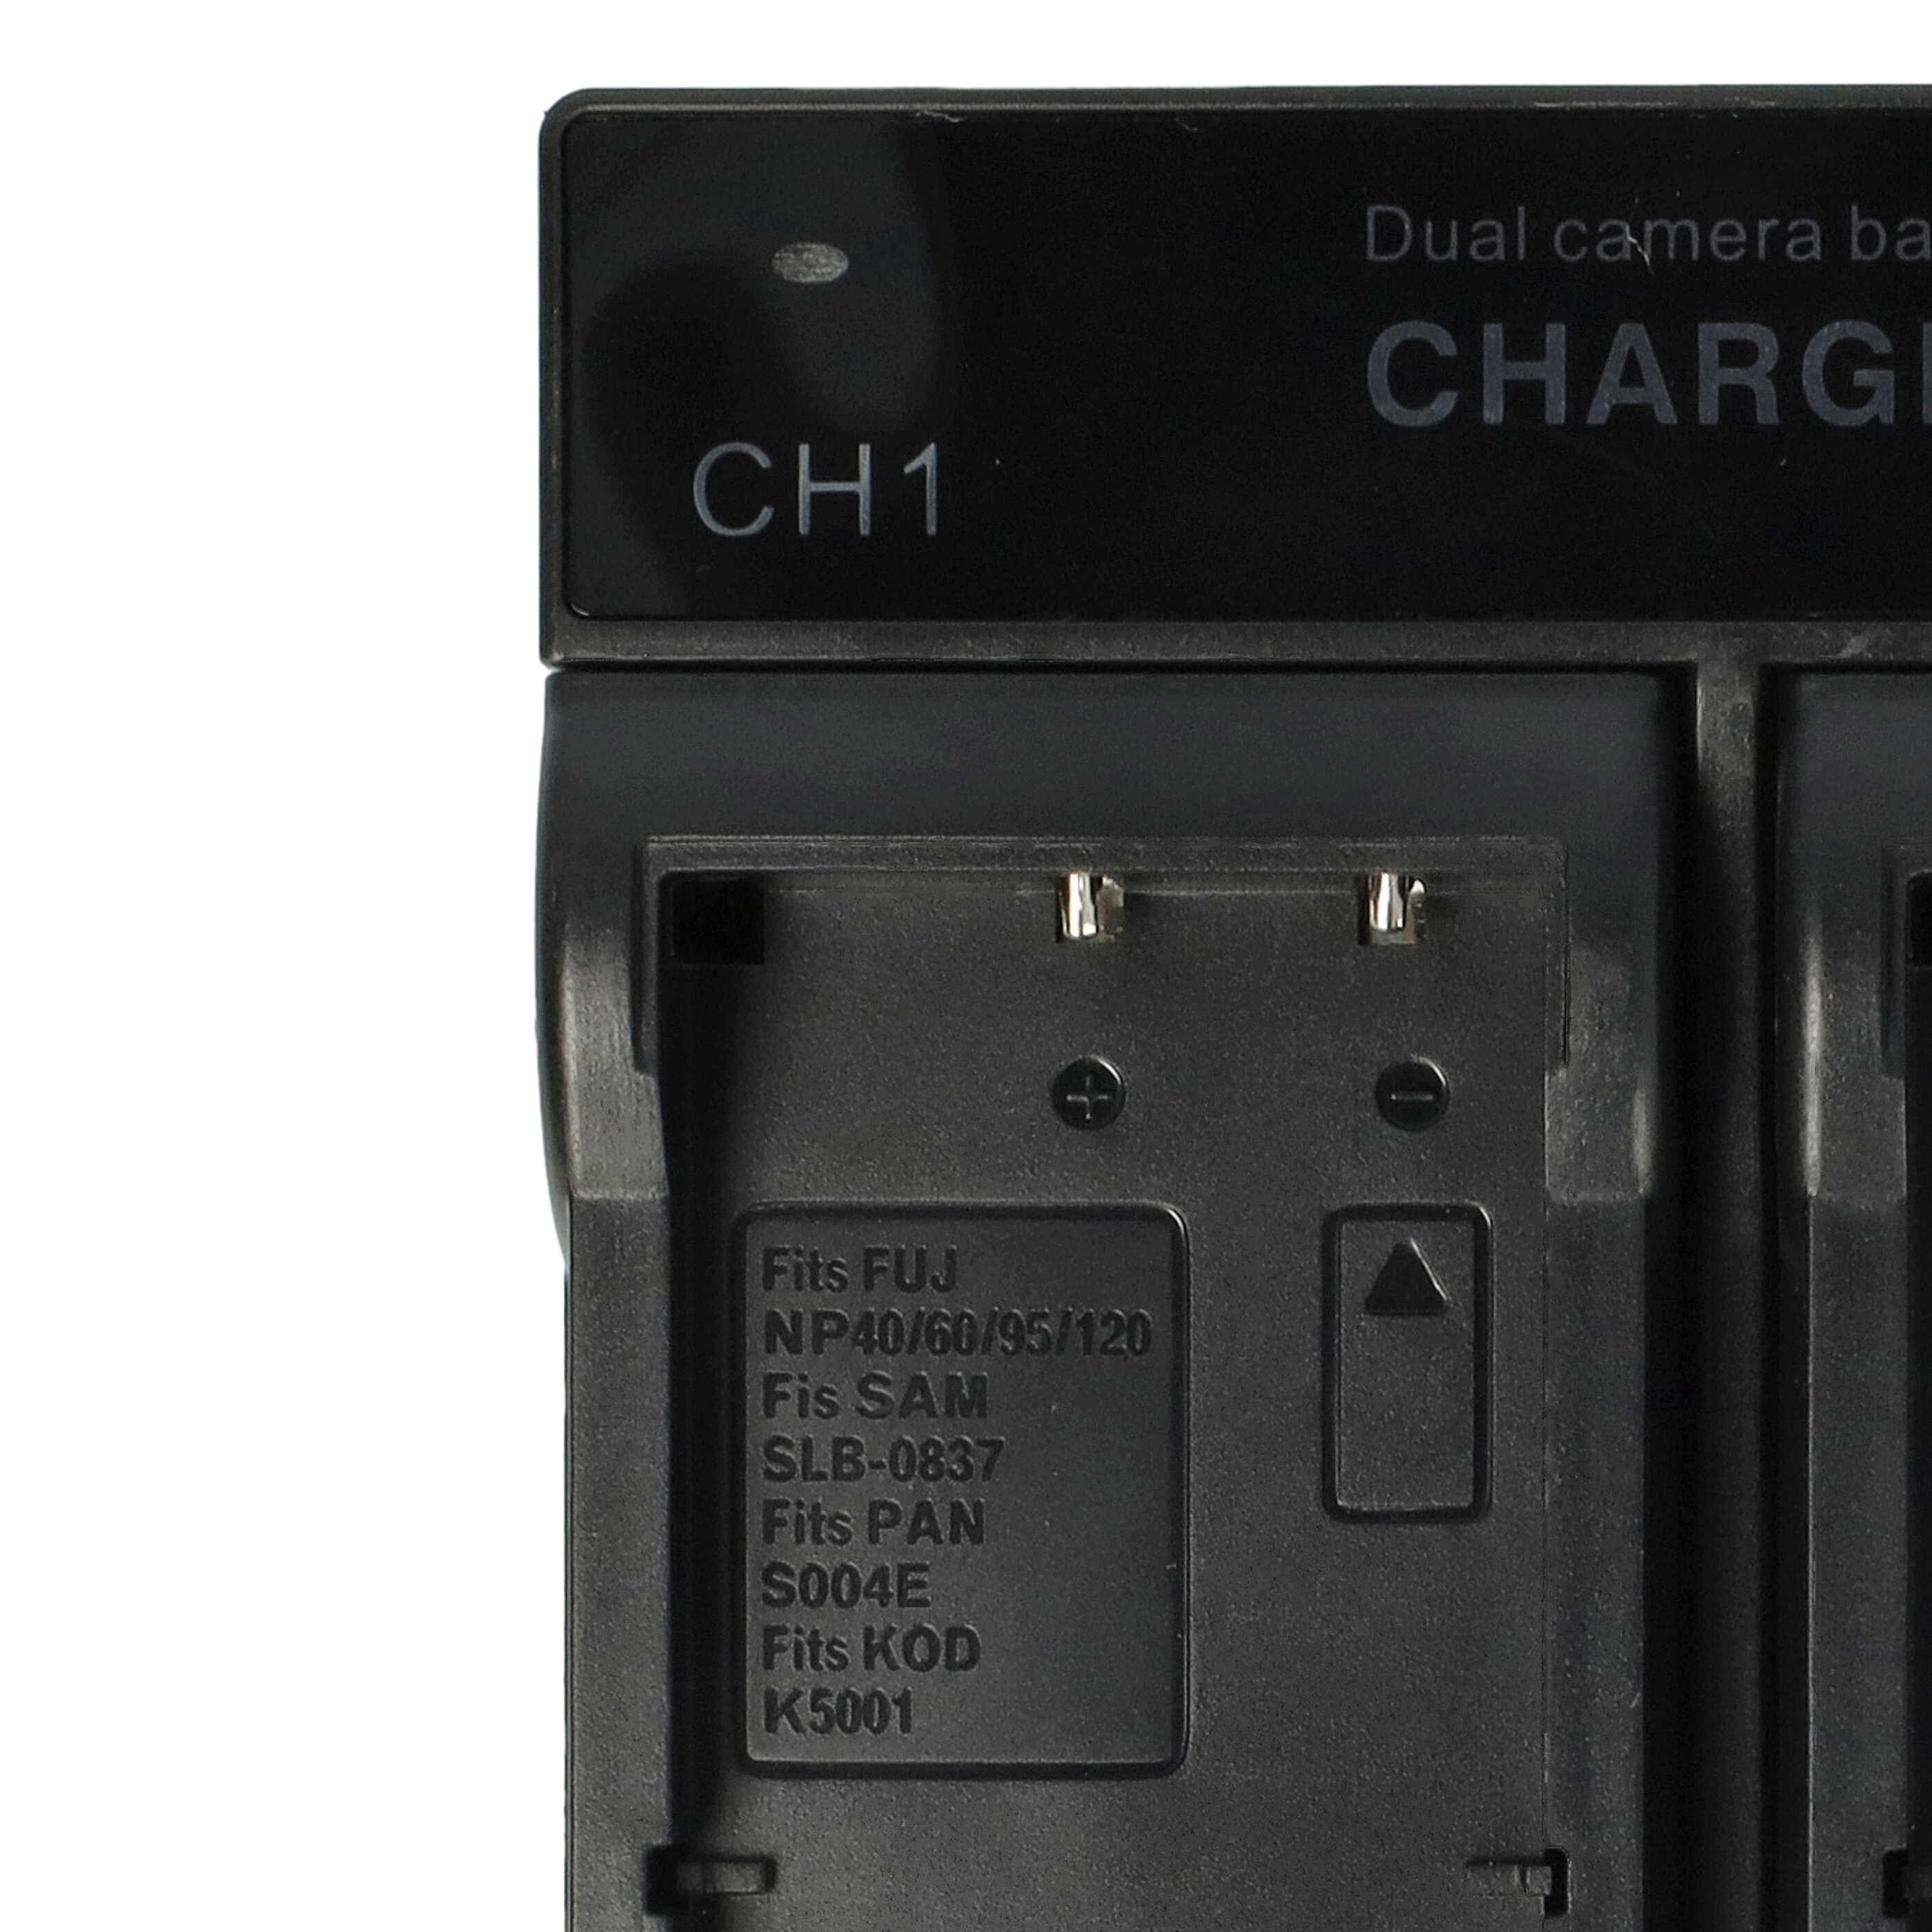 Battery Charger suitable for Belkin Digital Camera - 0.5 / 0.9 A, 4.2 / 8.4 V